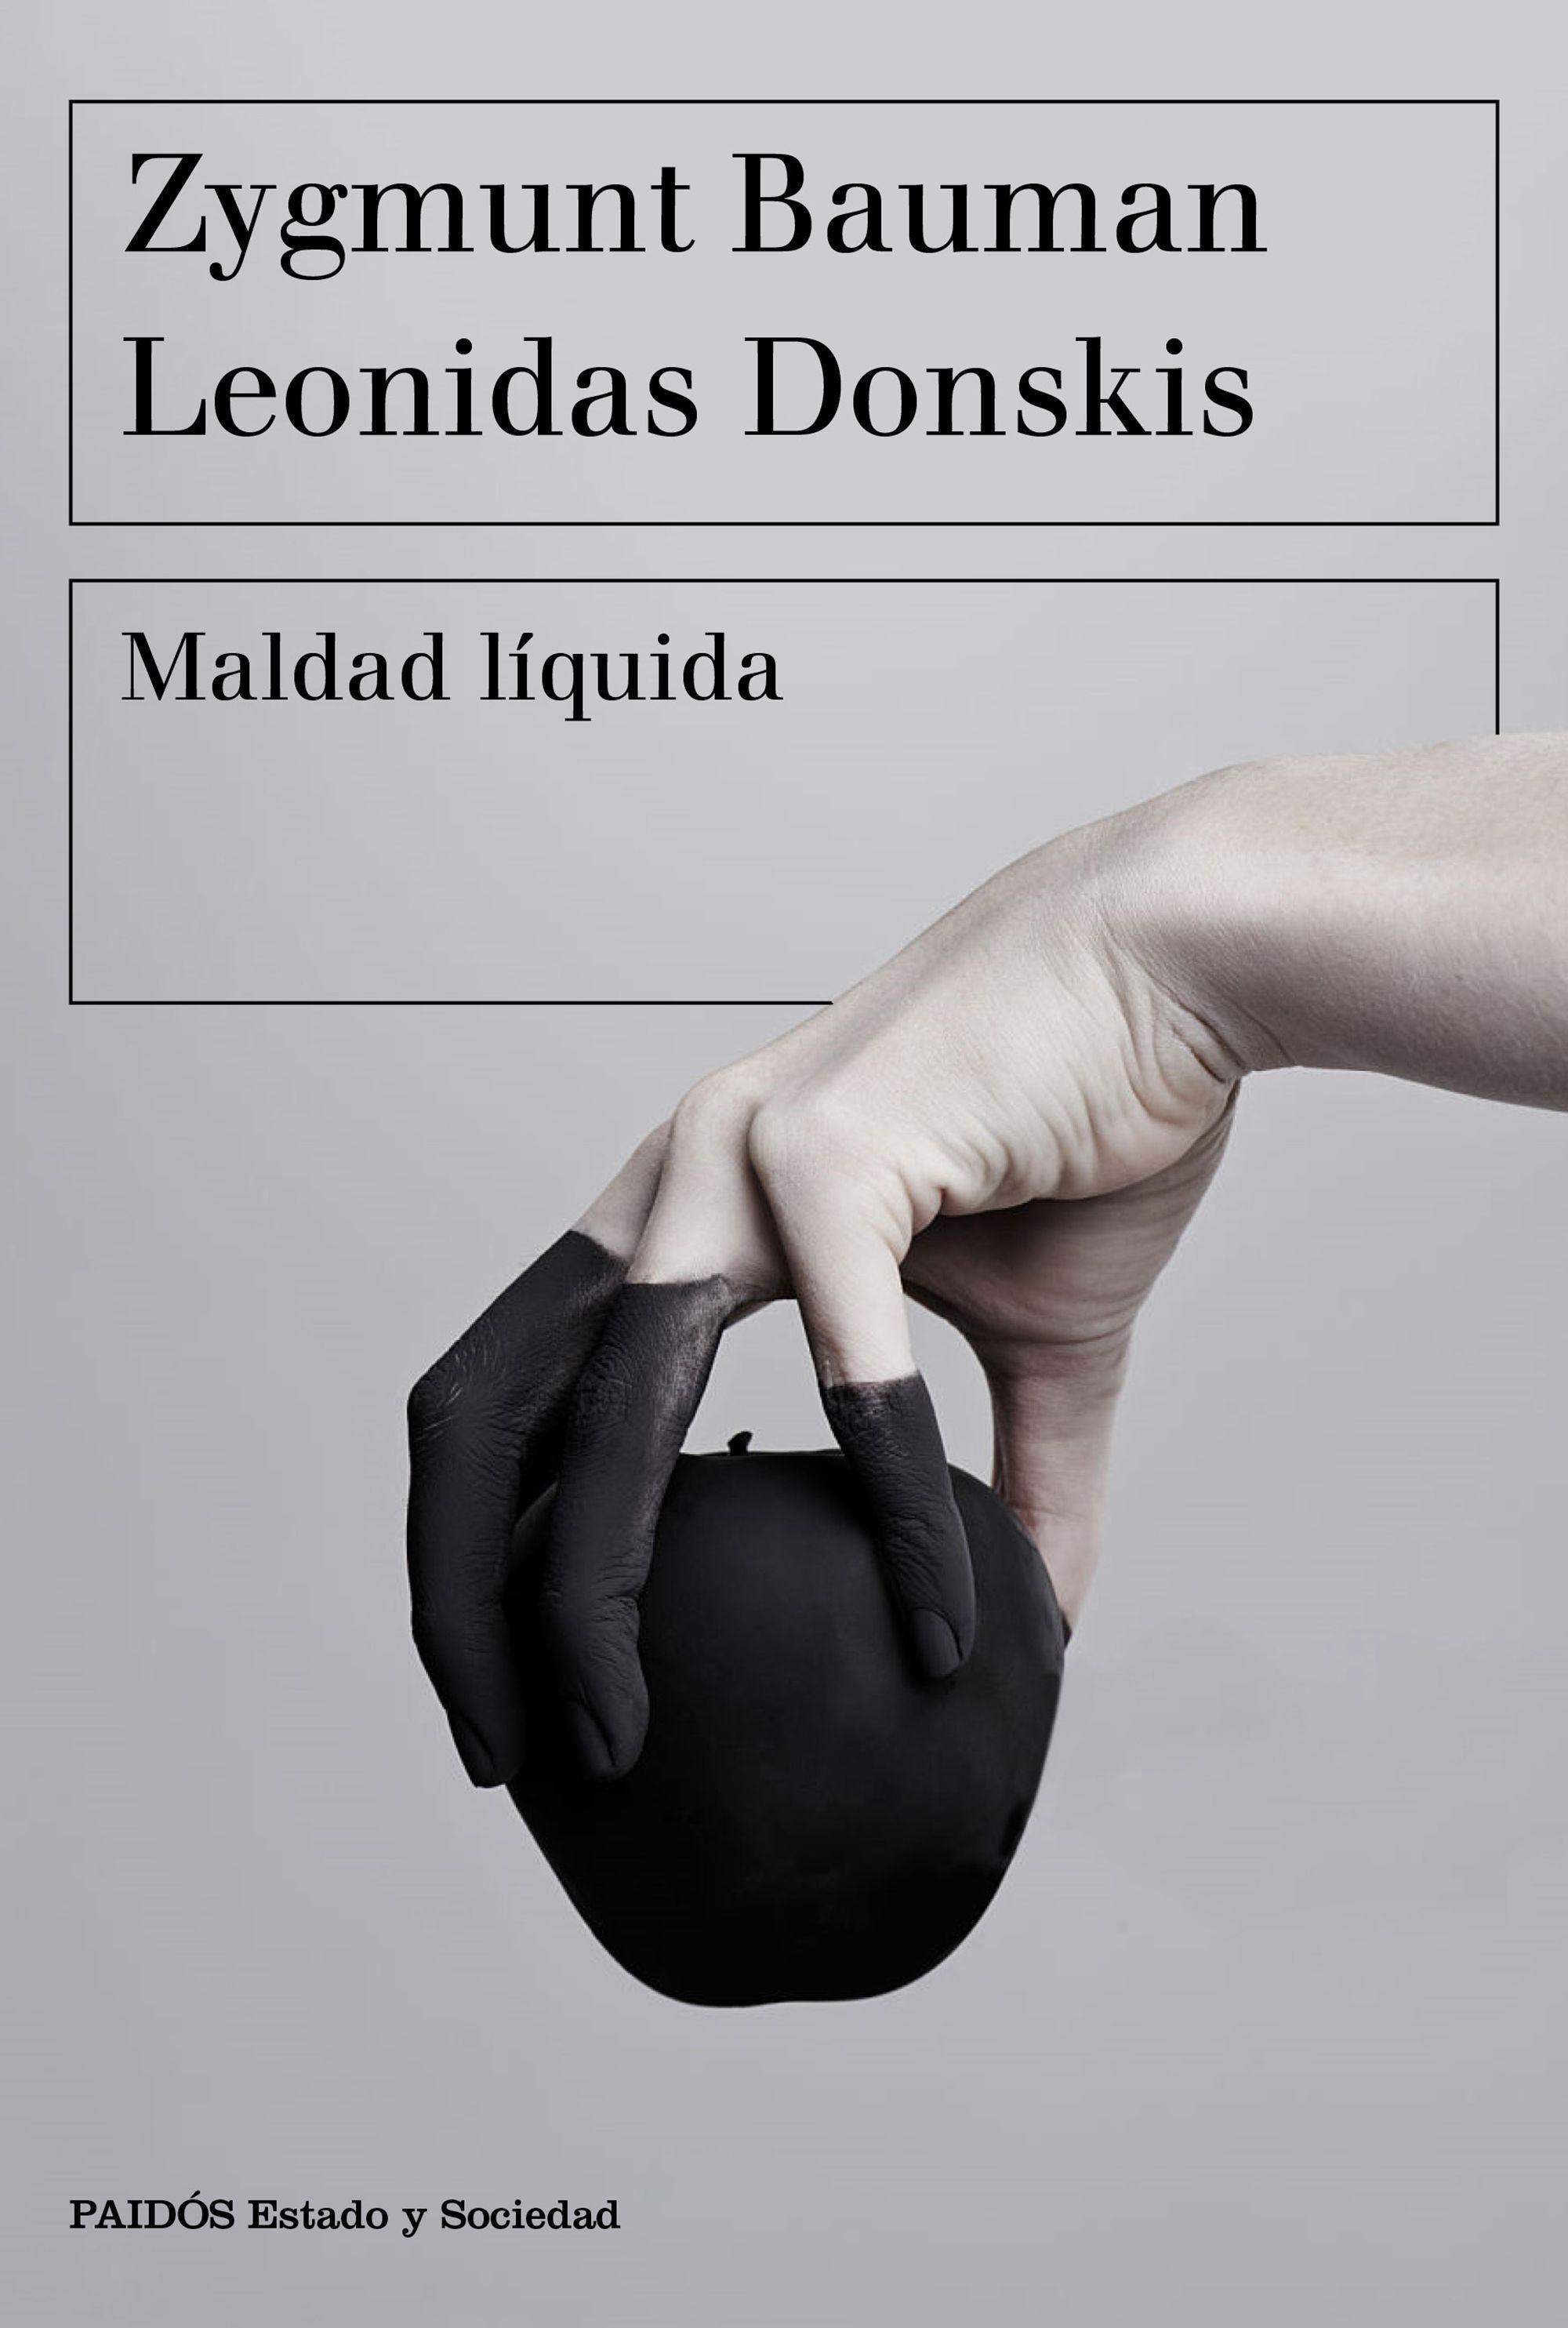 MALDAD LÍQUIDA "VIVIR SIN ALTERNATIVAS". 